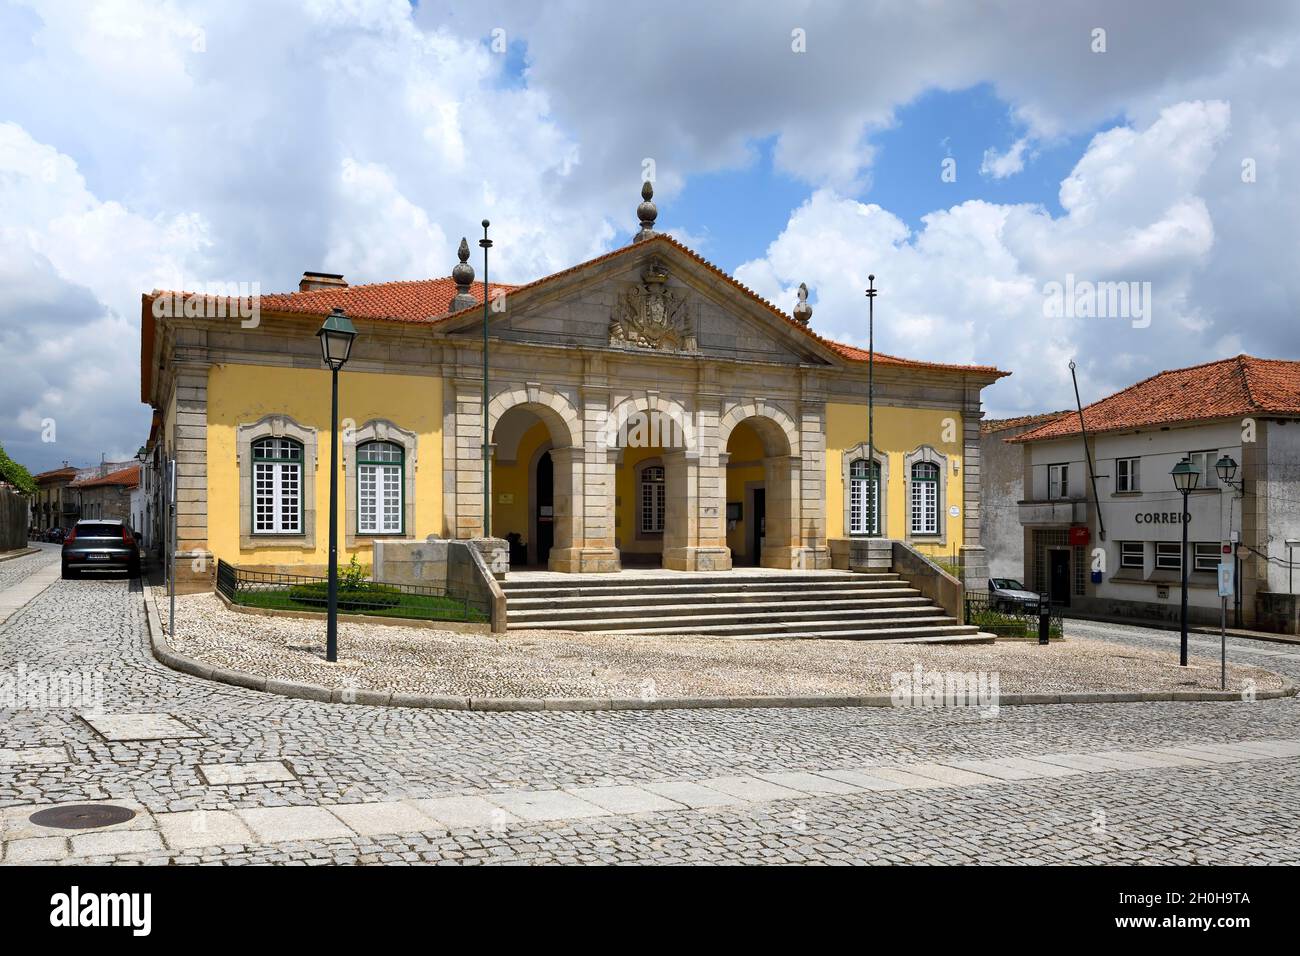 Hôtel de ville, ancien corps de Garde du XVIIIe siècle, Almeida, village historique autour de la Serra da Estrela, quartier de Castelo Branco, Beira, Portugal Banque D'Images